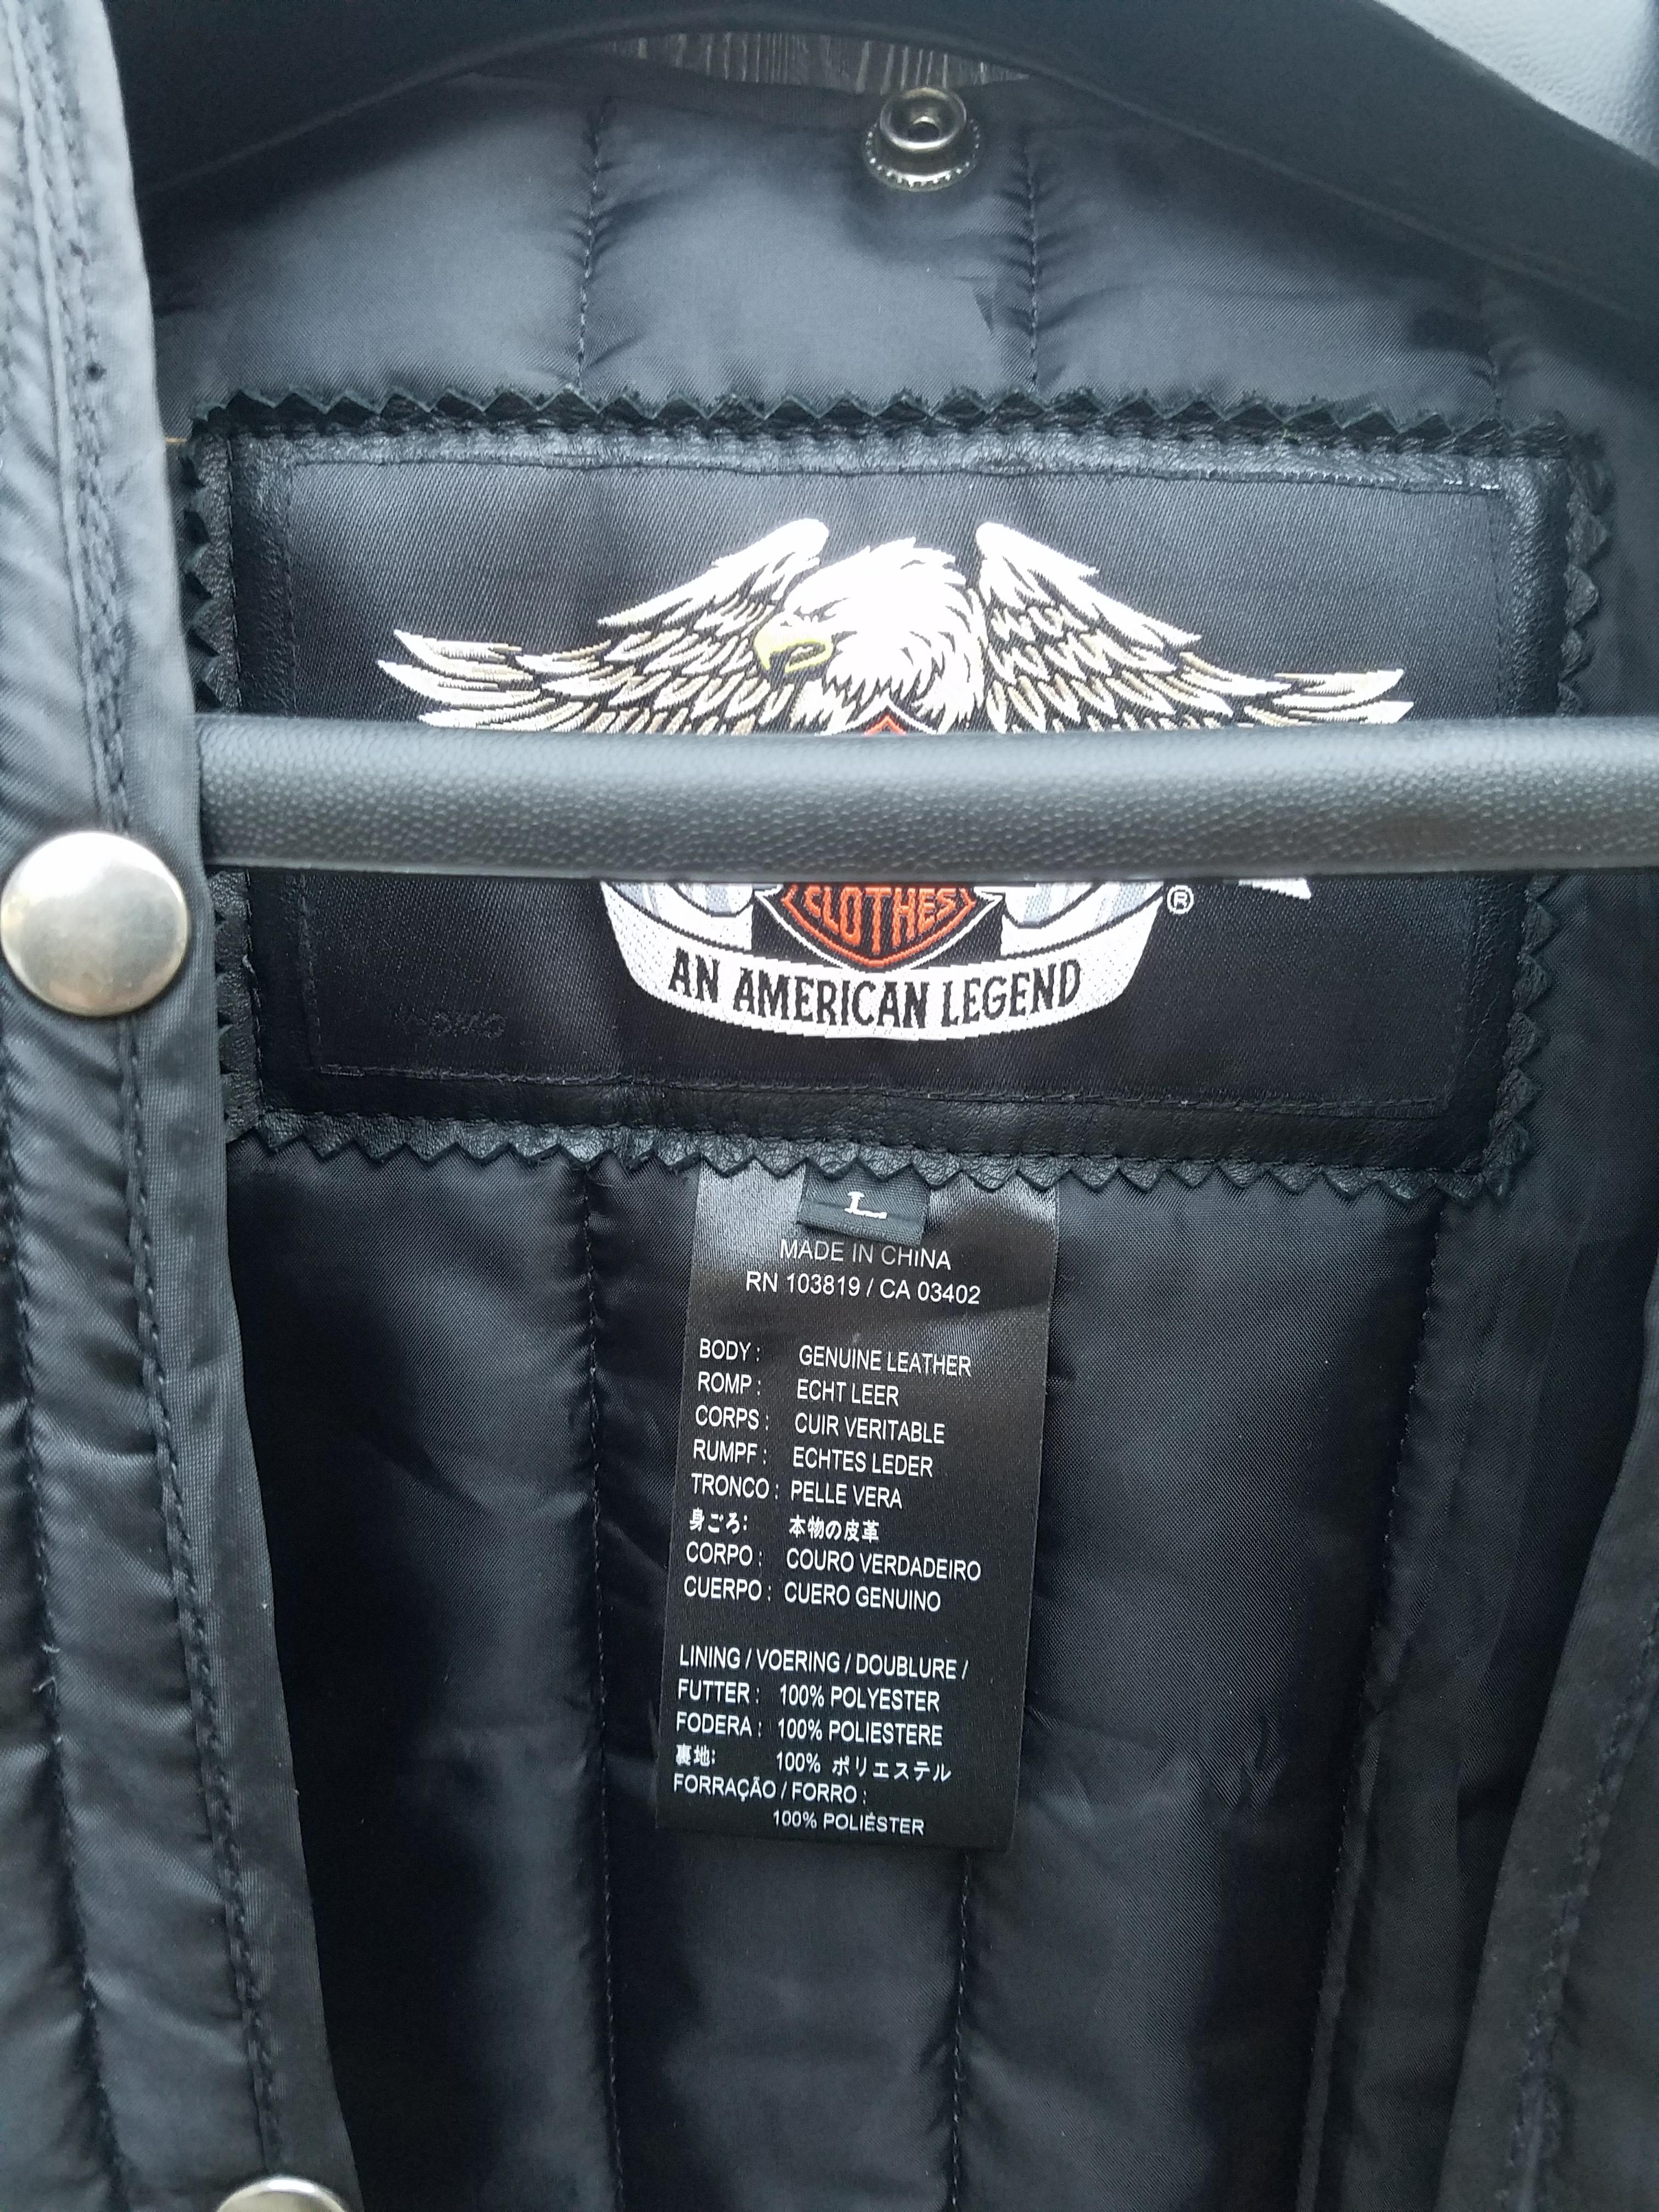 Leather Harley Jacket 